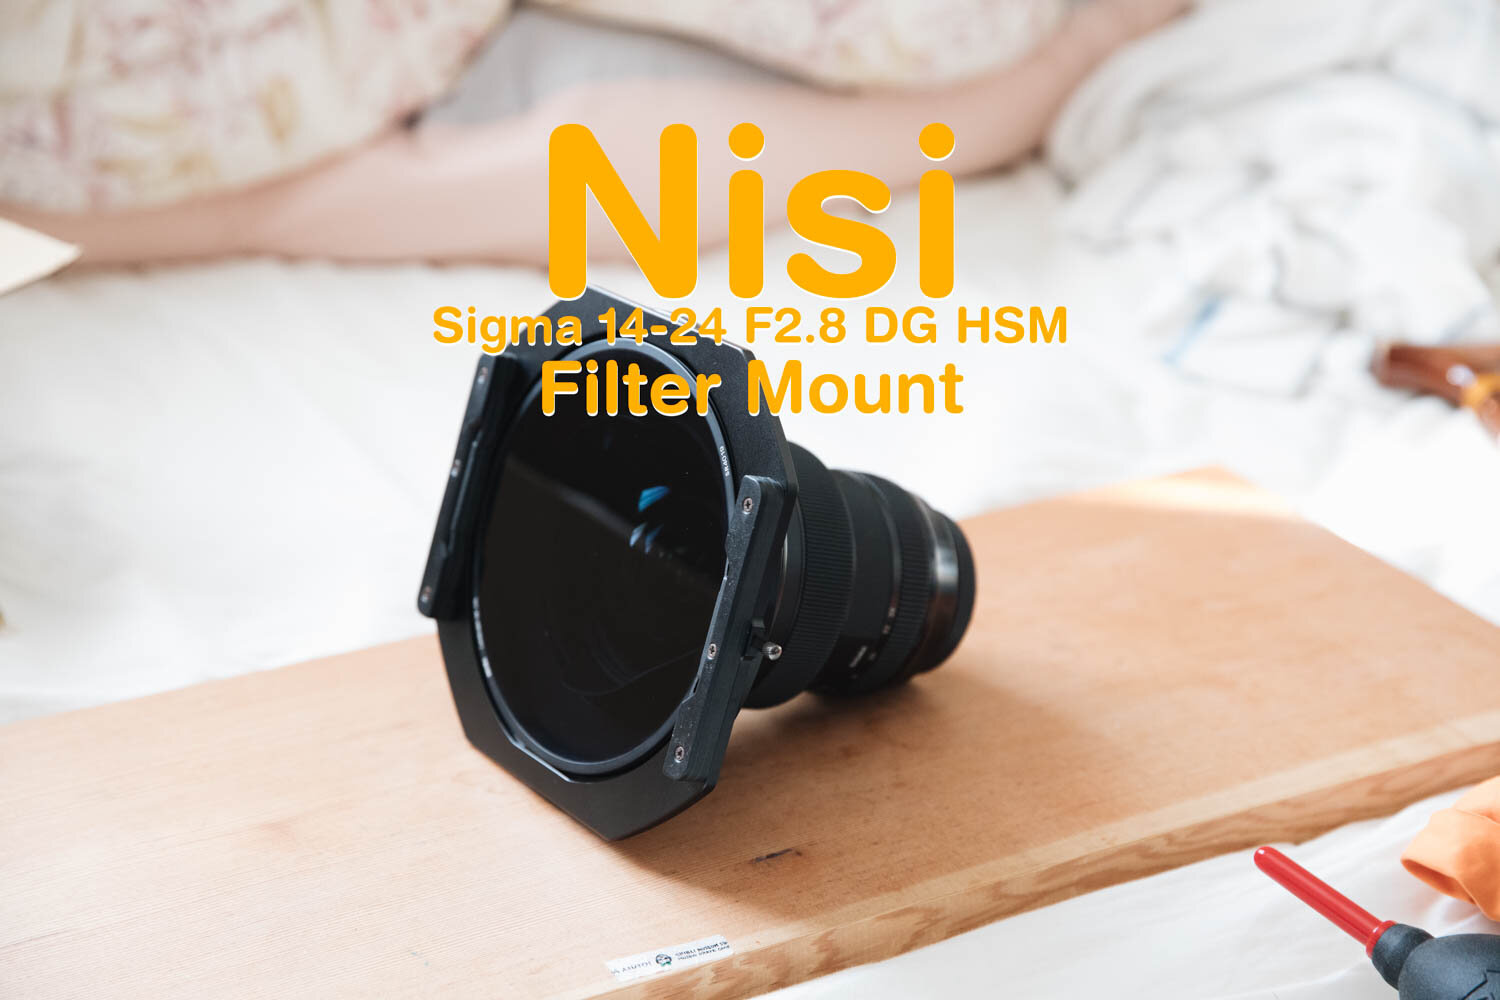 Sigma 14-24mm F2.8 DG HSM用のNiSi製フィルターシステムを試す